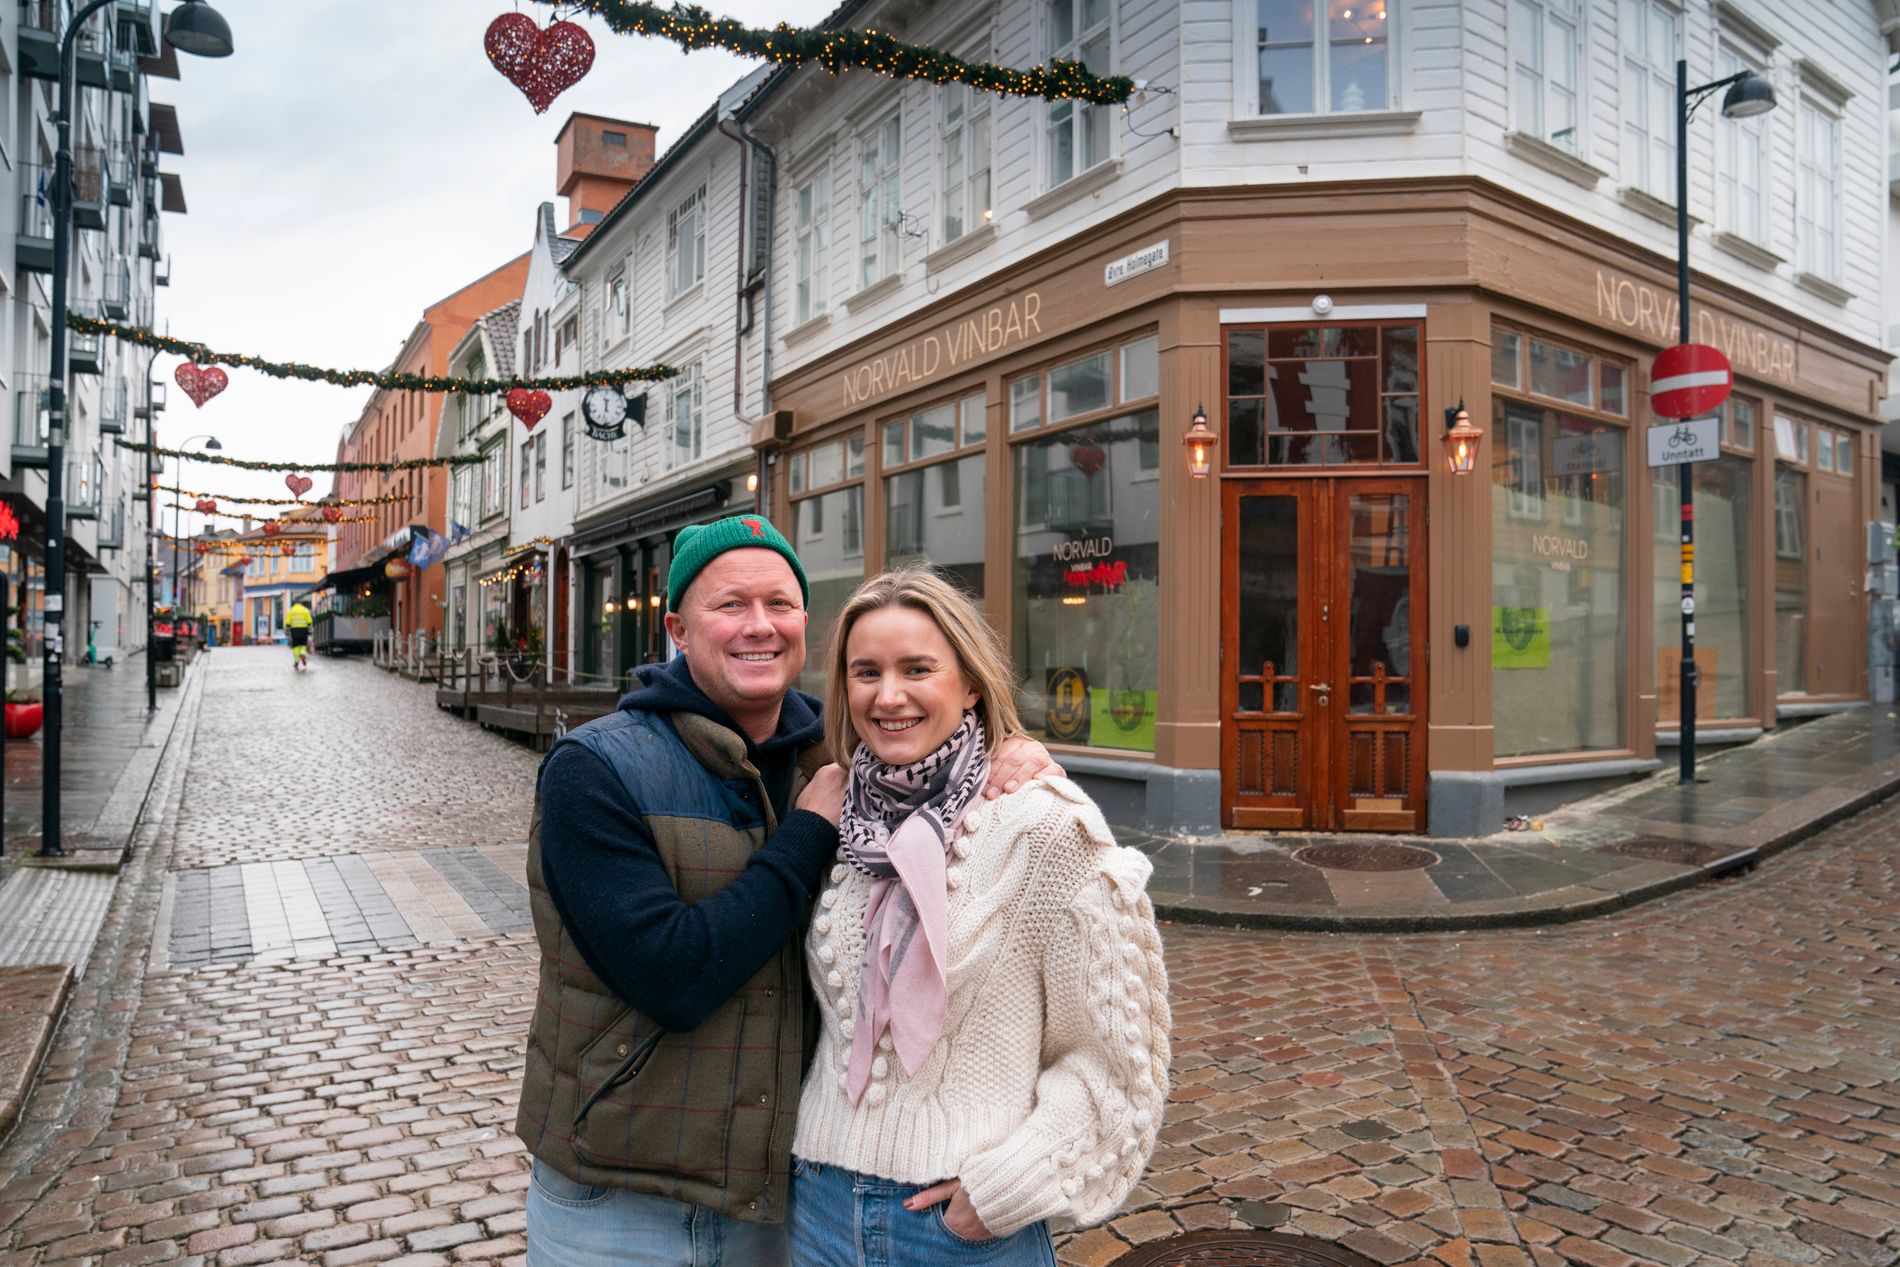 Knut-Espen Misje og Silje Hanasand gledet seg til å åpne vinbar før jul. Slik ble det ikke.